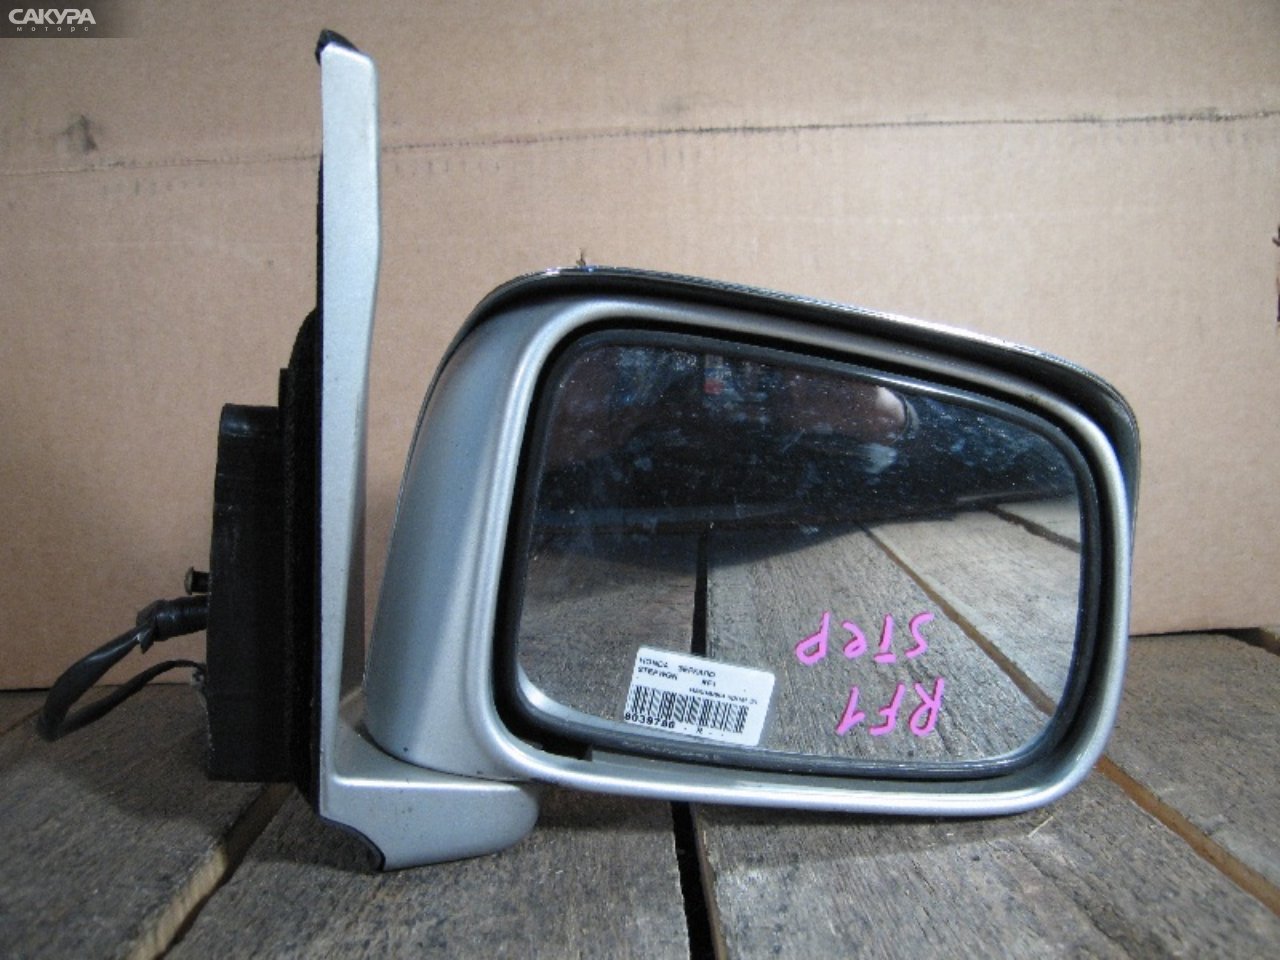 Зеркало боковое правое Honda Stepwgn RF1: купить в Сакура Абакан.